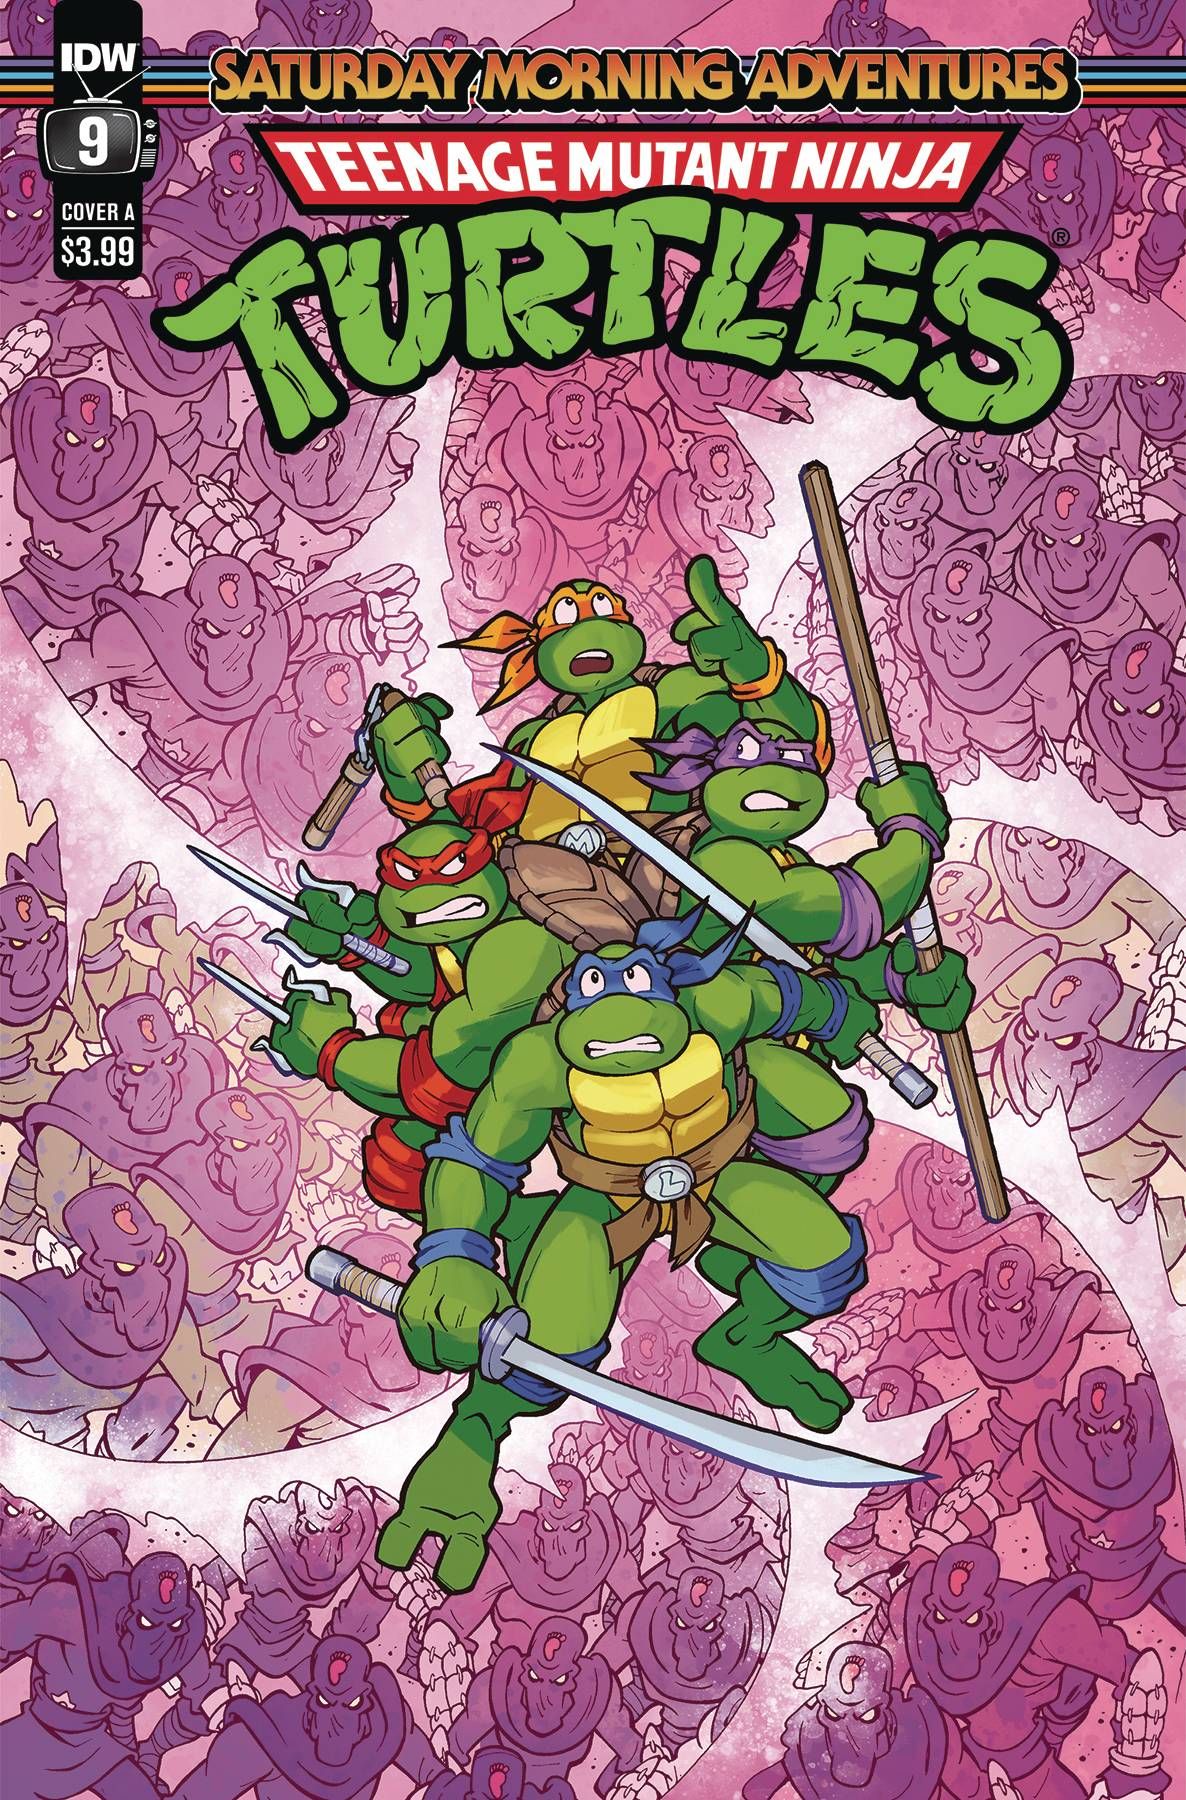 Teenage Mutant Ninja Turtles: Saturday Morning Adventures #9 Comic